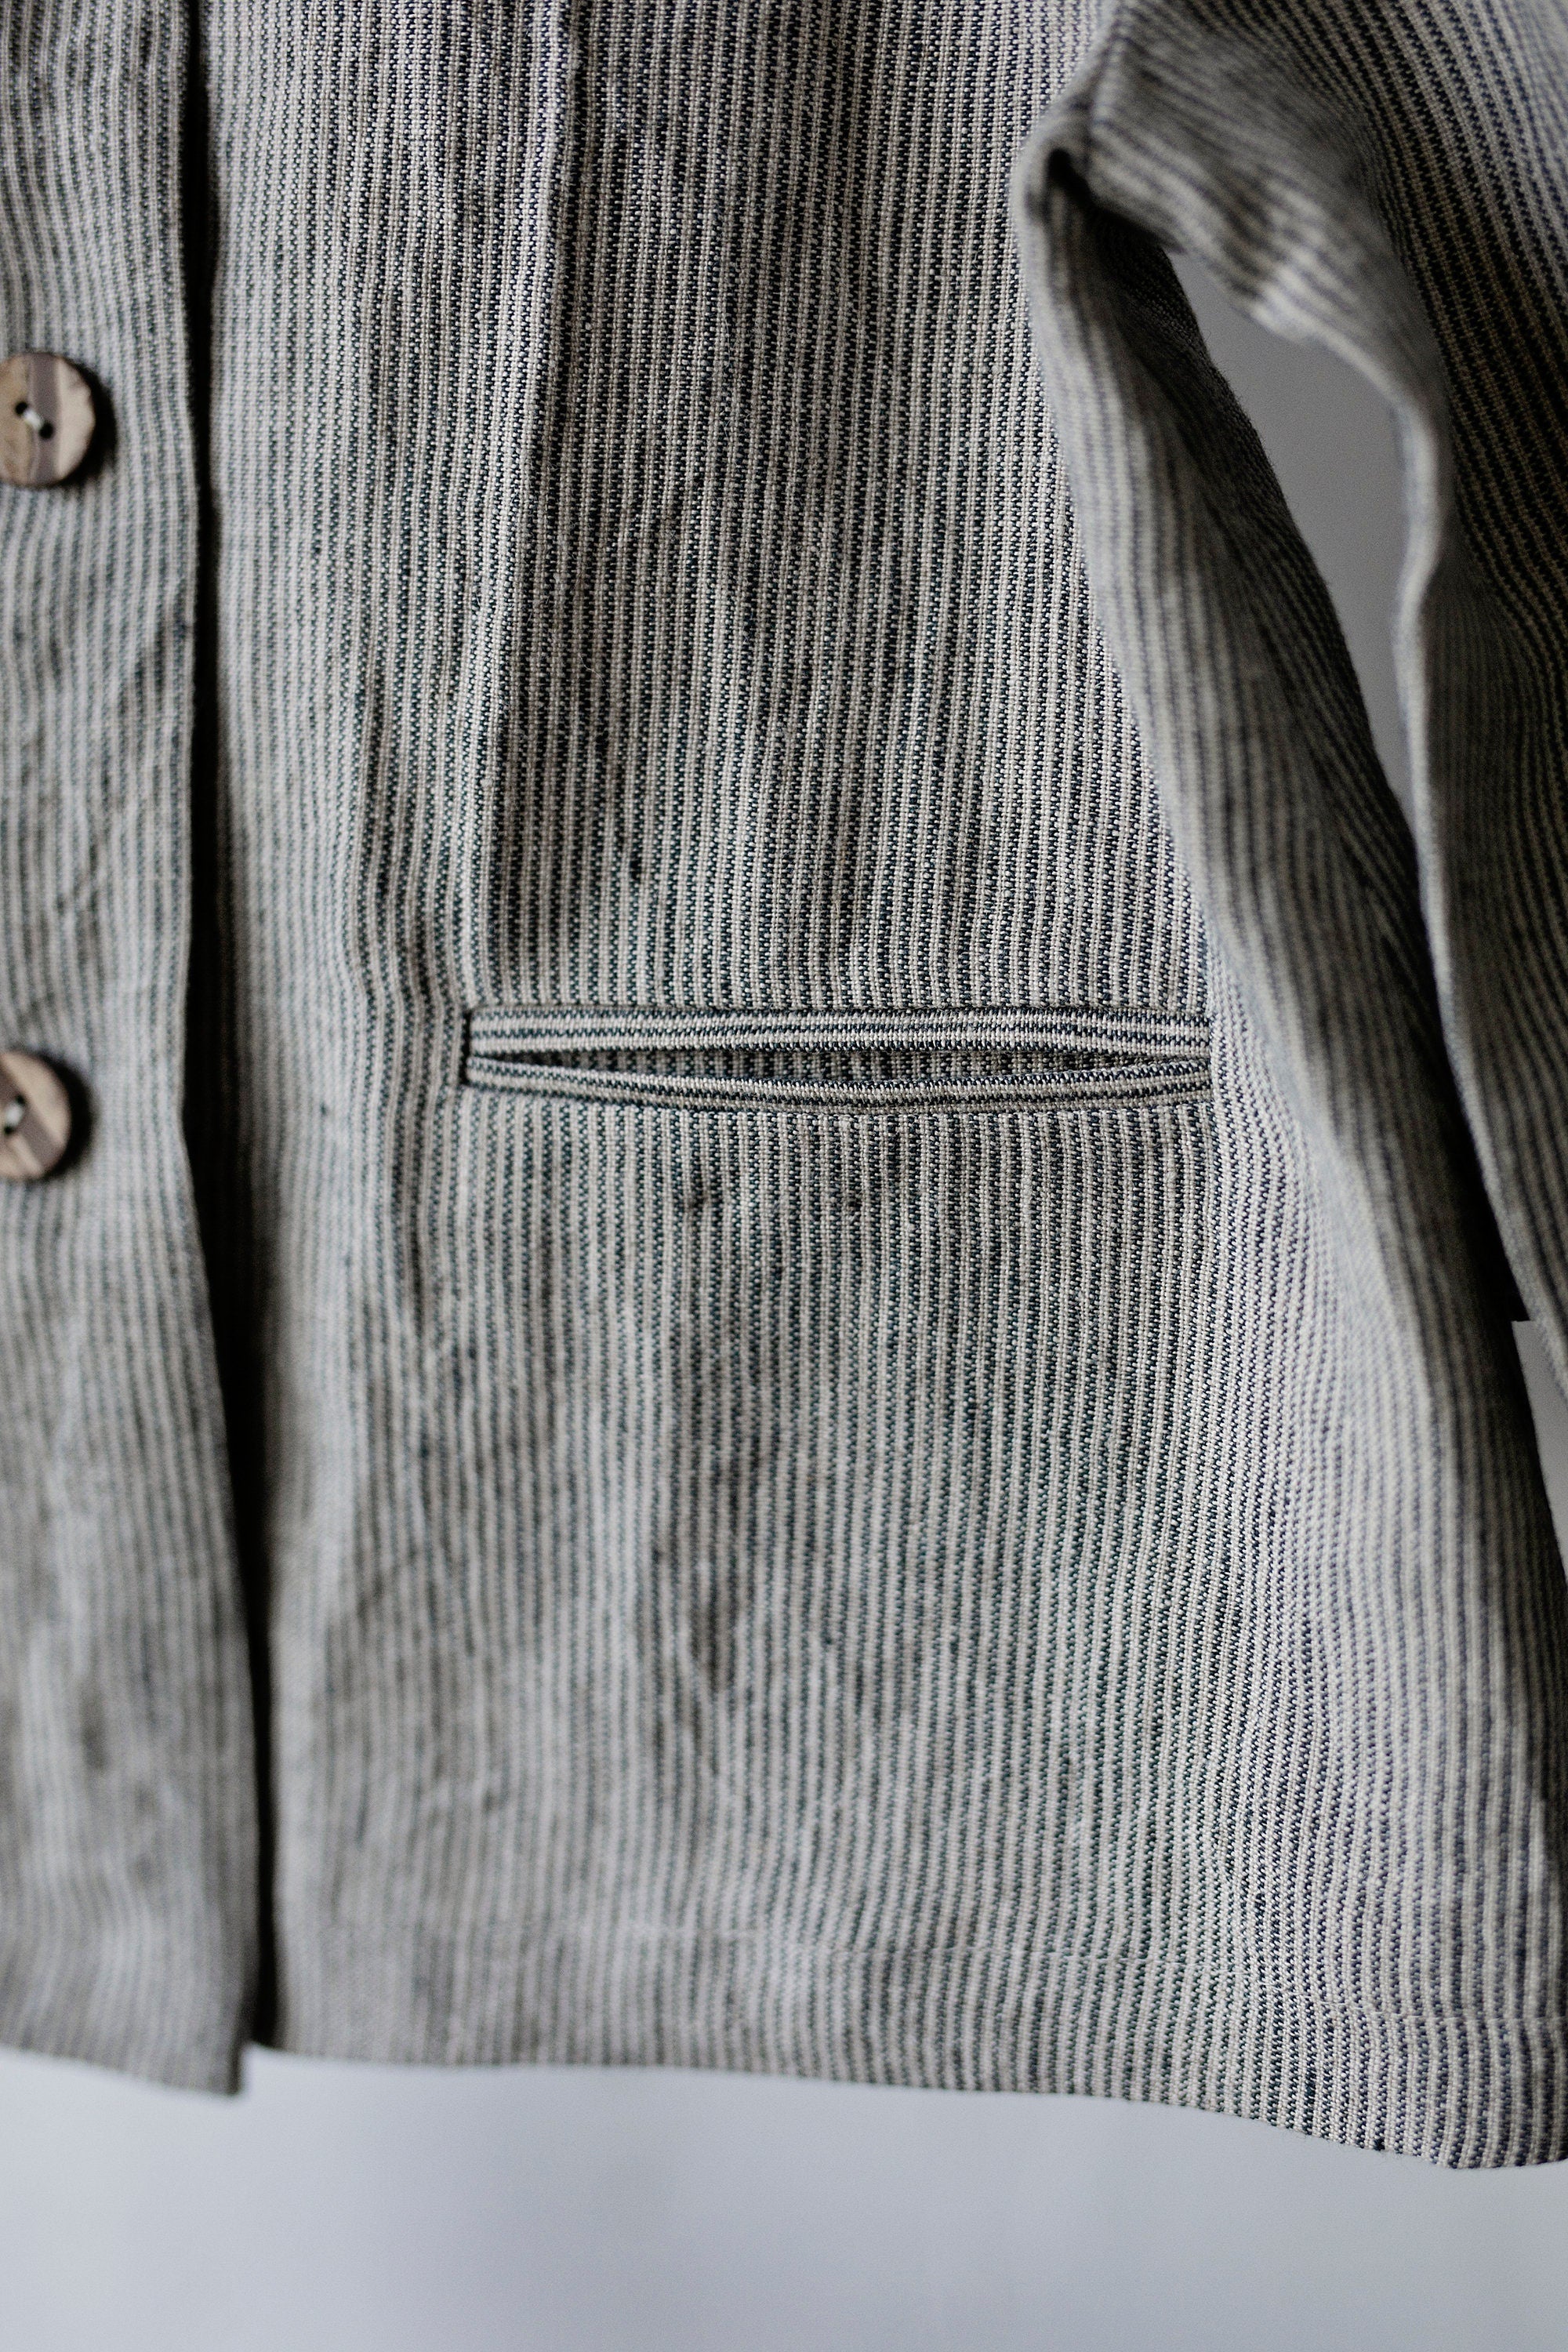 B&amp;W Stripe Peter Pan Linen Collar Linen Jacket